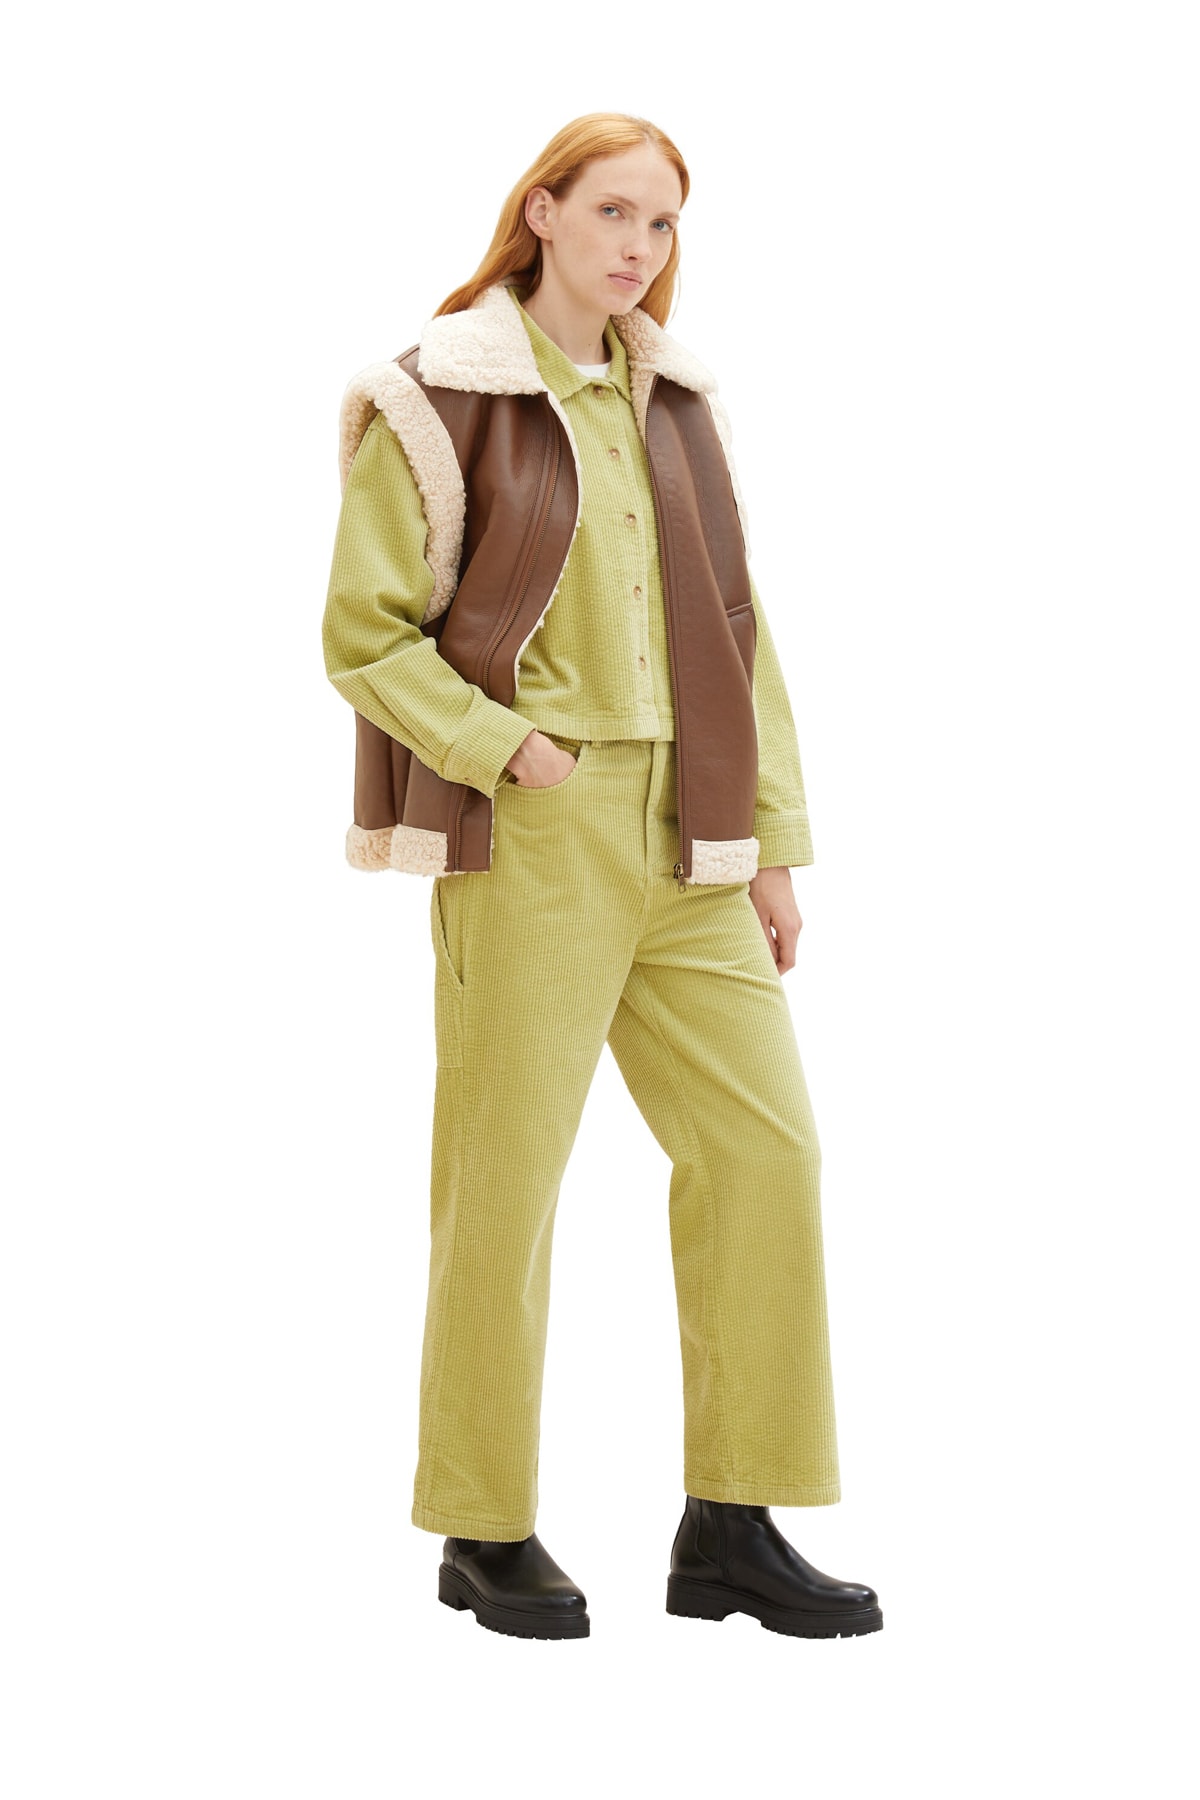 Брюки Женские/Девочки шнуровые брюки Carpender Tom Tailor Denim, оранжевый худи tom tailor размер l оранжевый